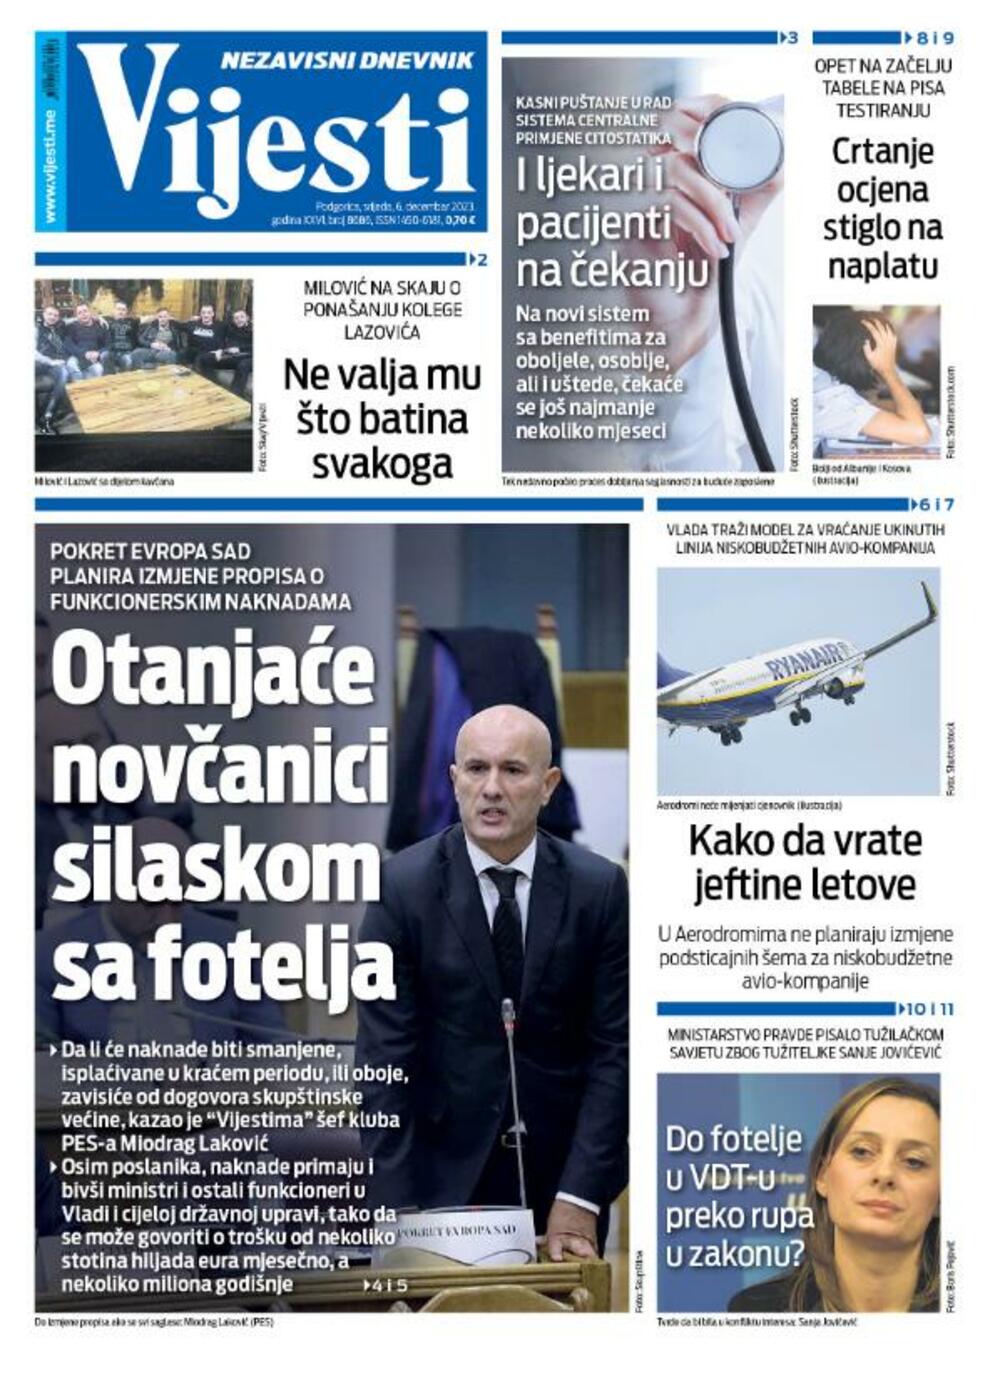 Naslovna strana "Vijesti" za 6. decembar 2023., Foto: Vijesti